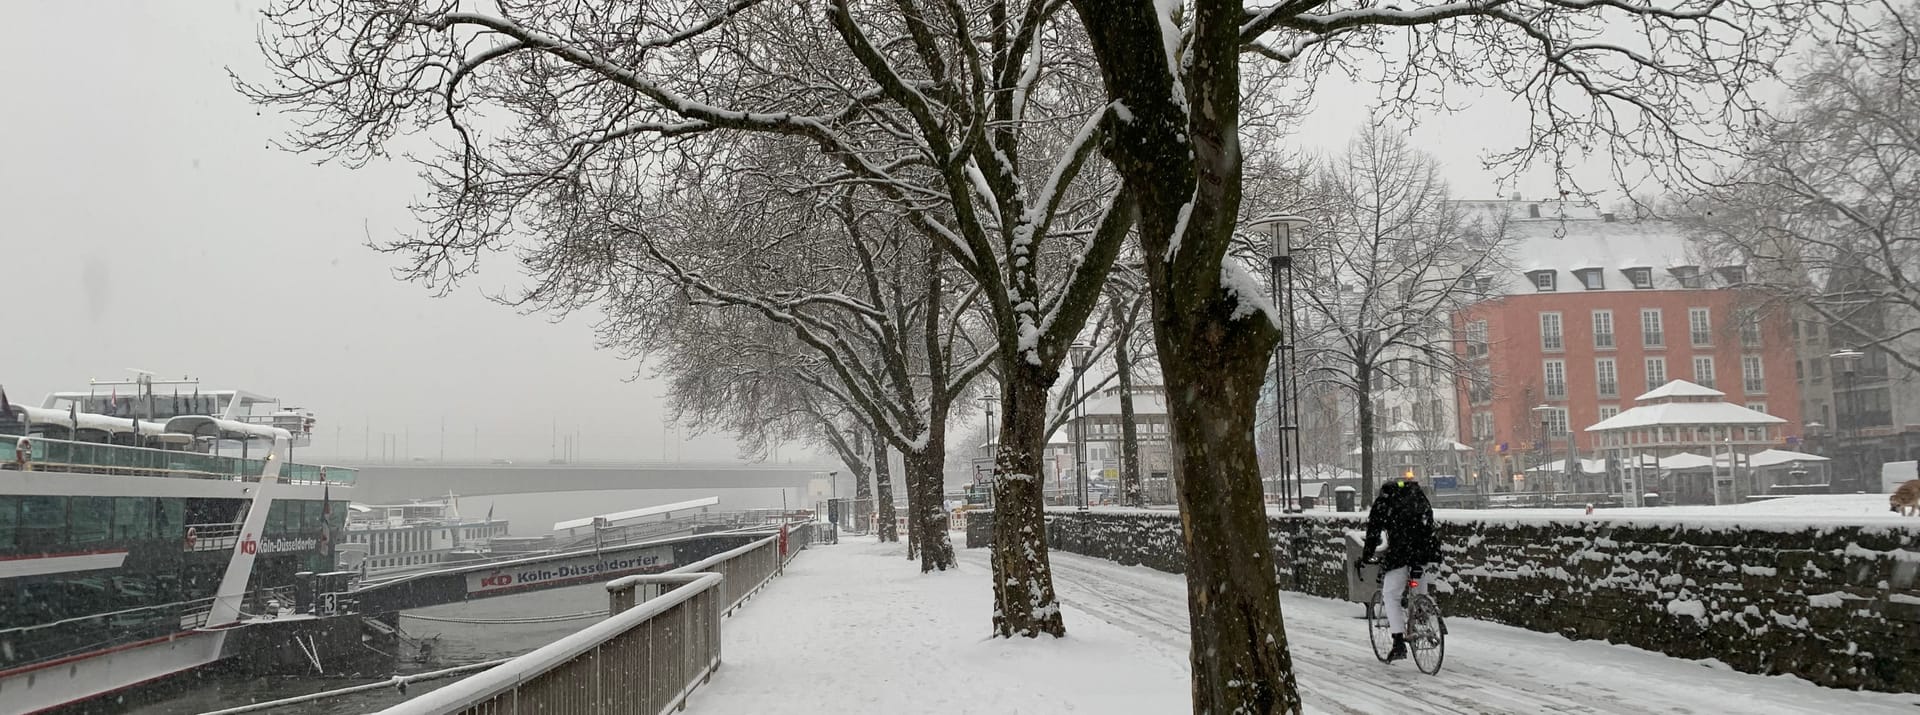 Rheinufer in Köln: Nach dem heftigen Schneefall am Mittwoch sind nur wenige Fußgänger unterwegs.